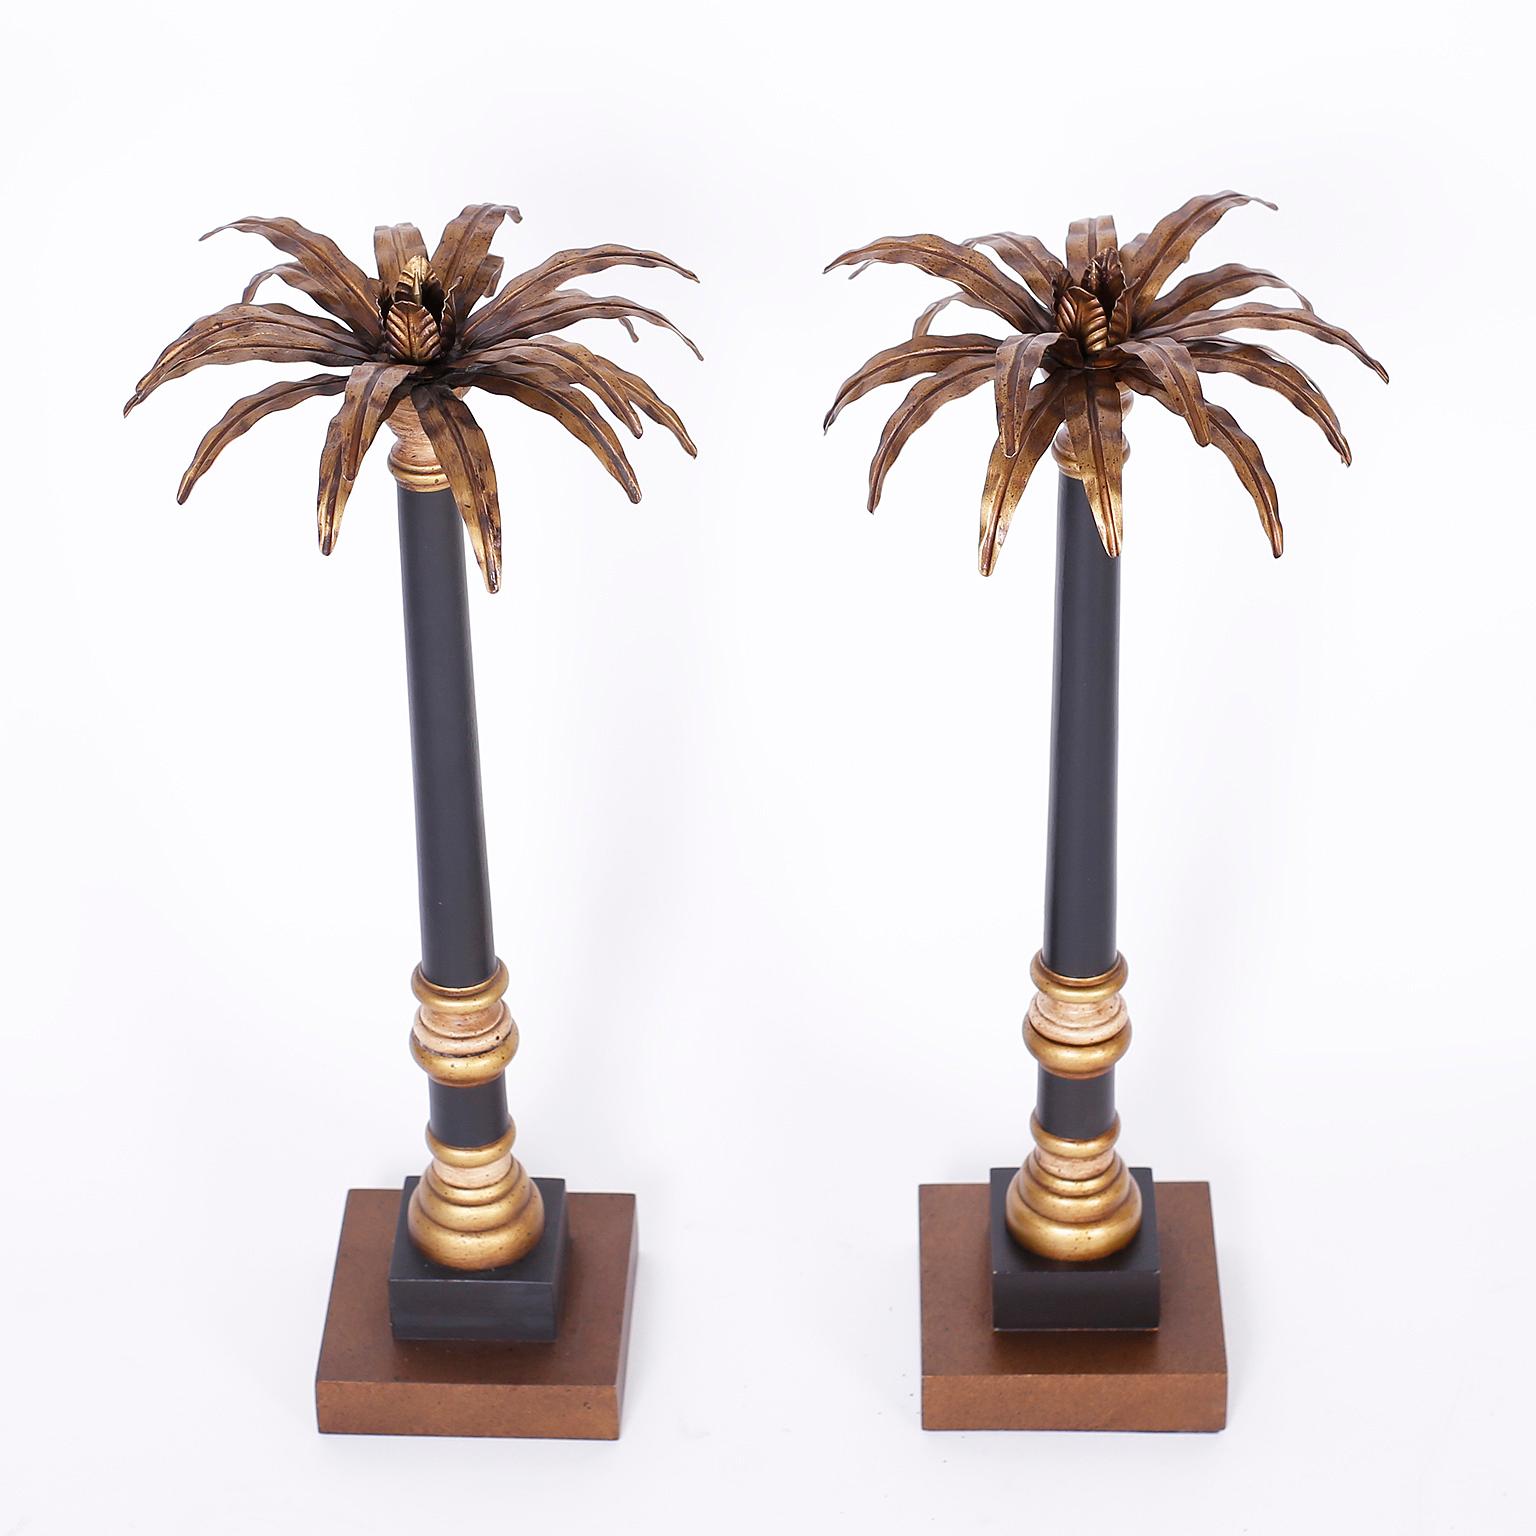 Paire de chandeliers italiens néoclassiques avec des sommets de palmiers stylisés en laiton ayant des chandeliers à piquer sur des bases en bois tourné peintes en noir et or avec une forme classique.